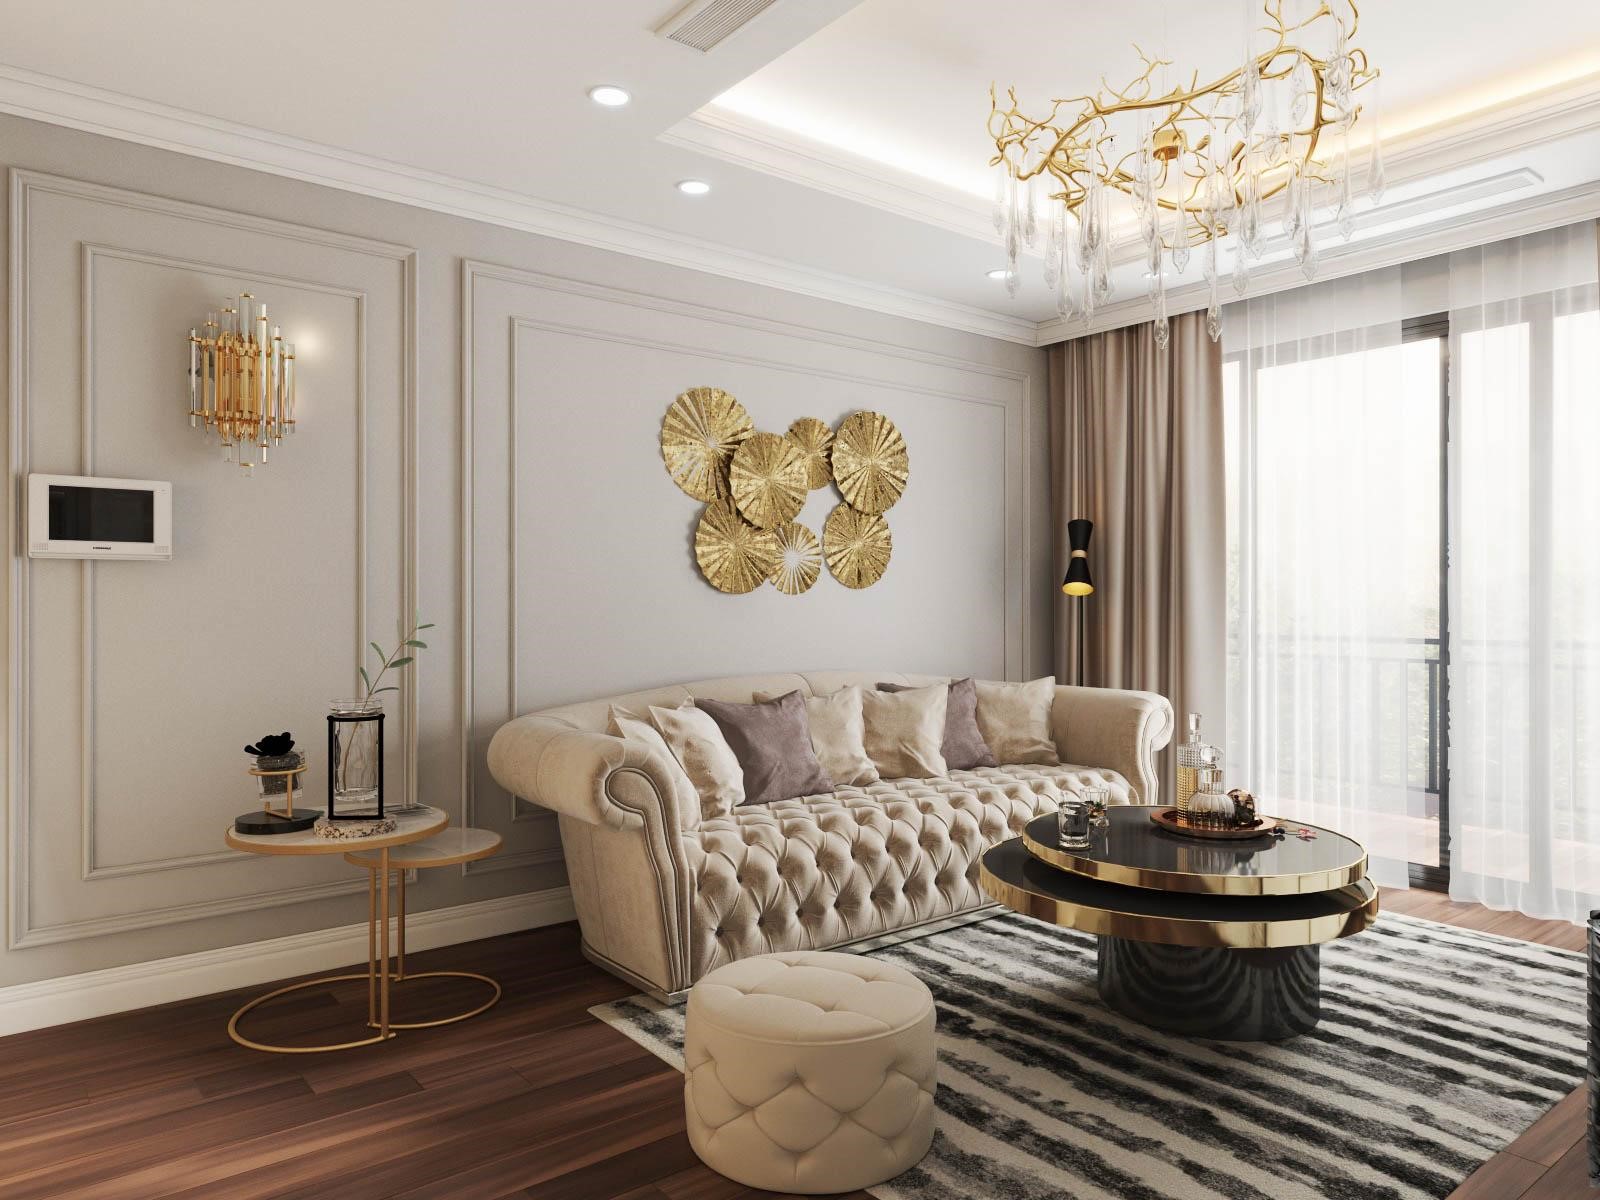 Phòng khách căn hộ ngập tràn ánh sáng tự nhiên, giúp tôn lên vẻ đẹp của thiết kế nội thất.